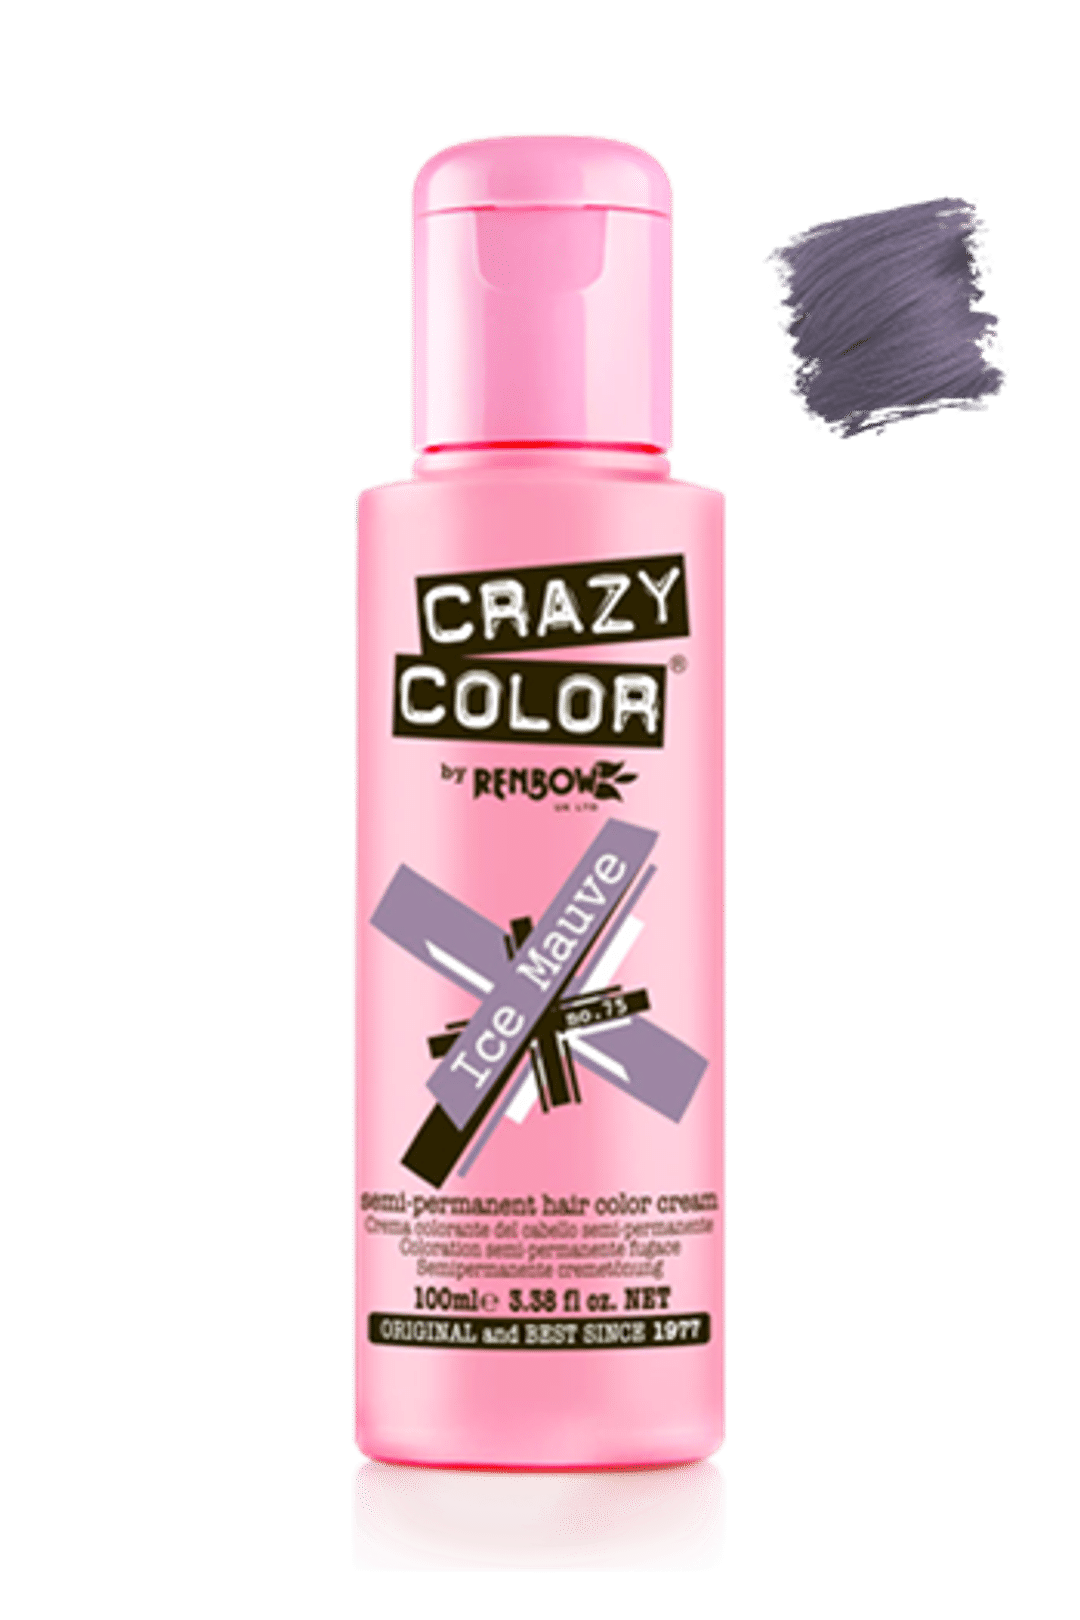 Crazy Color Semi Permanent Hair Color Cream - Ice Mauve